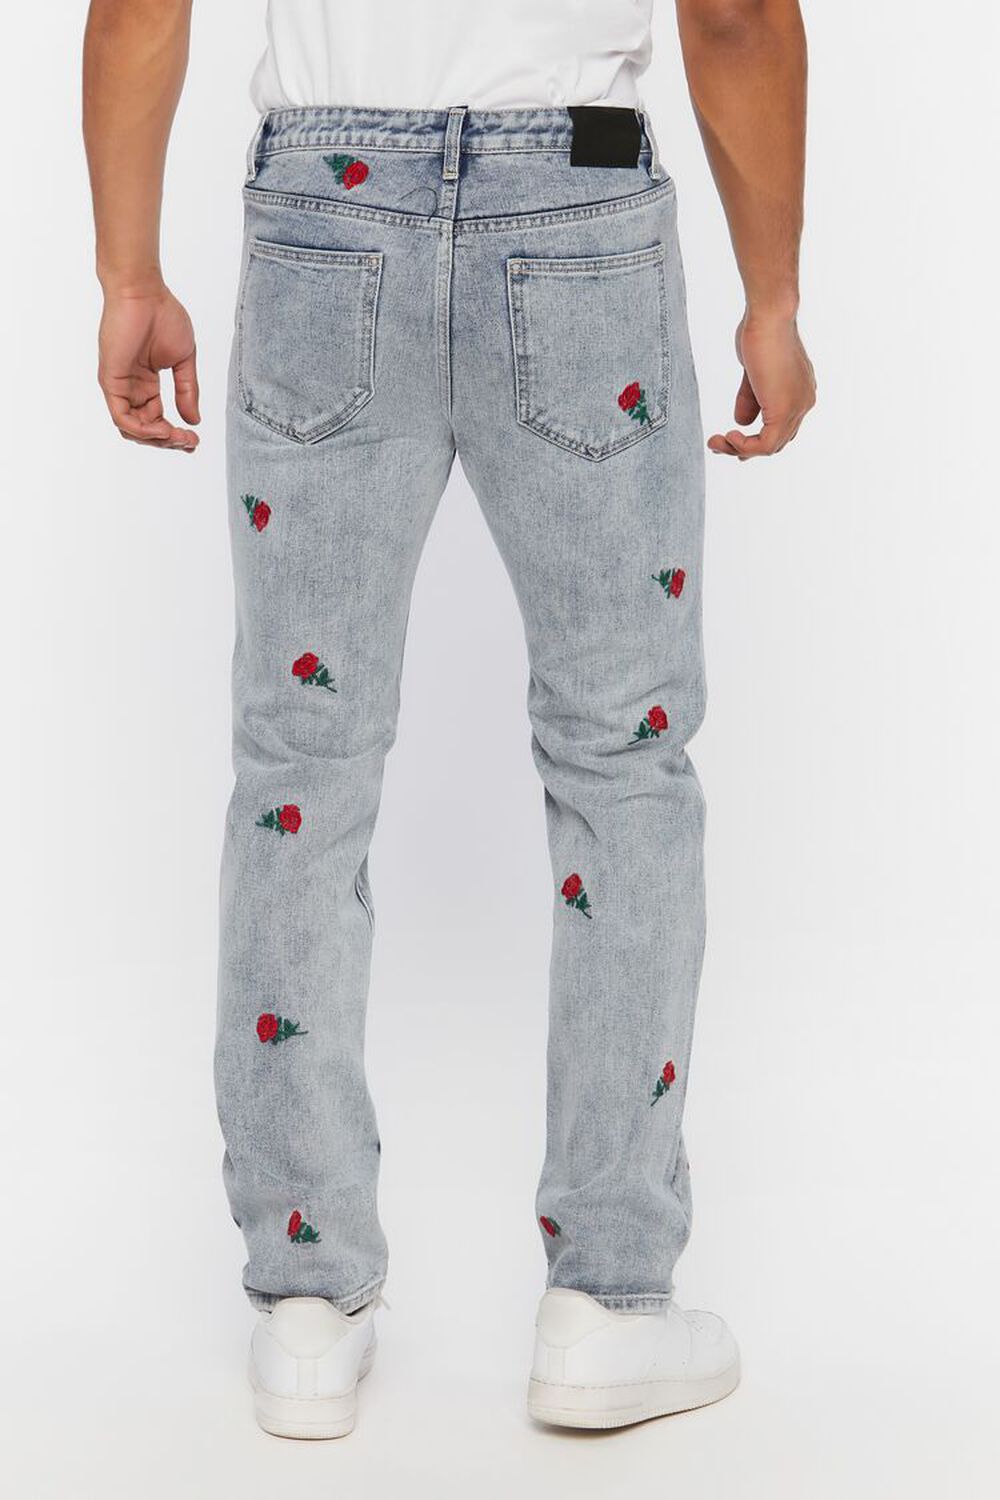 LIGHT DENIM Rose Embroidered Slim-Fit Jeans, image 3